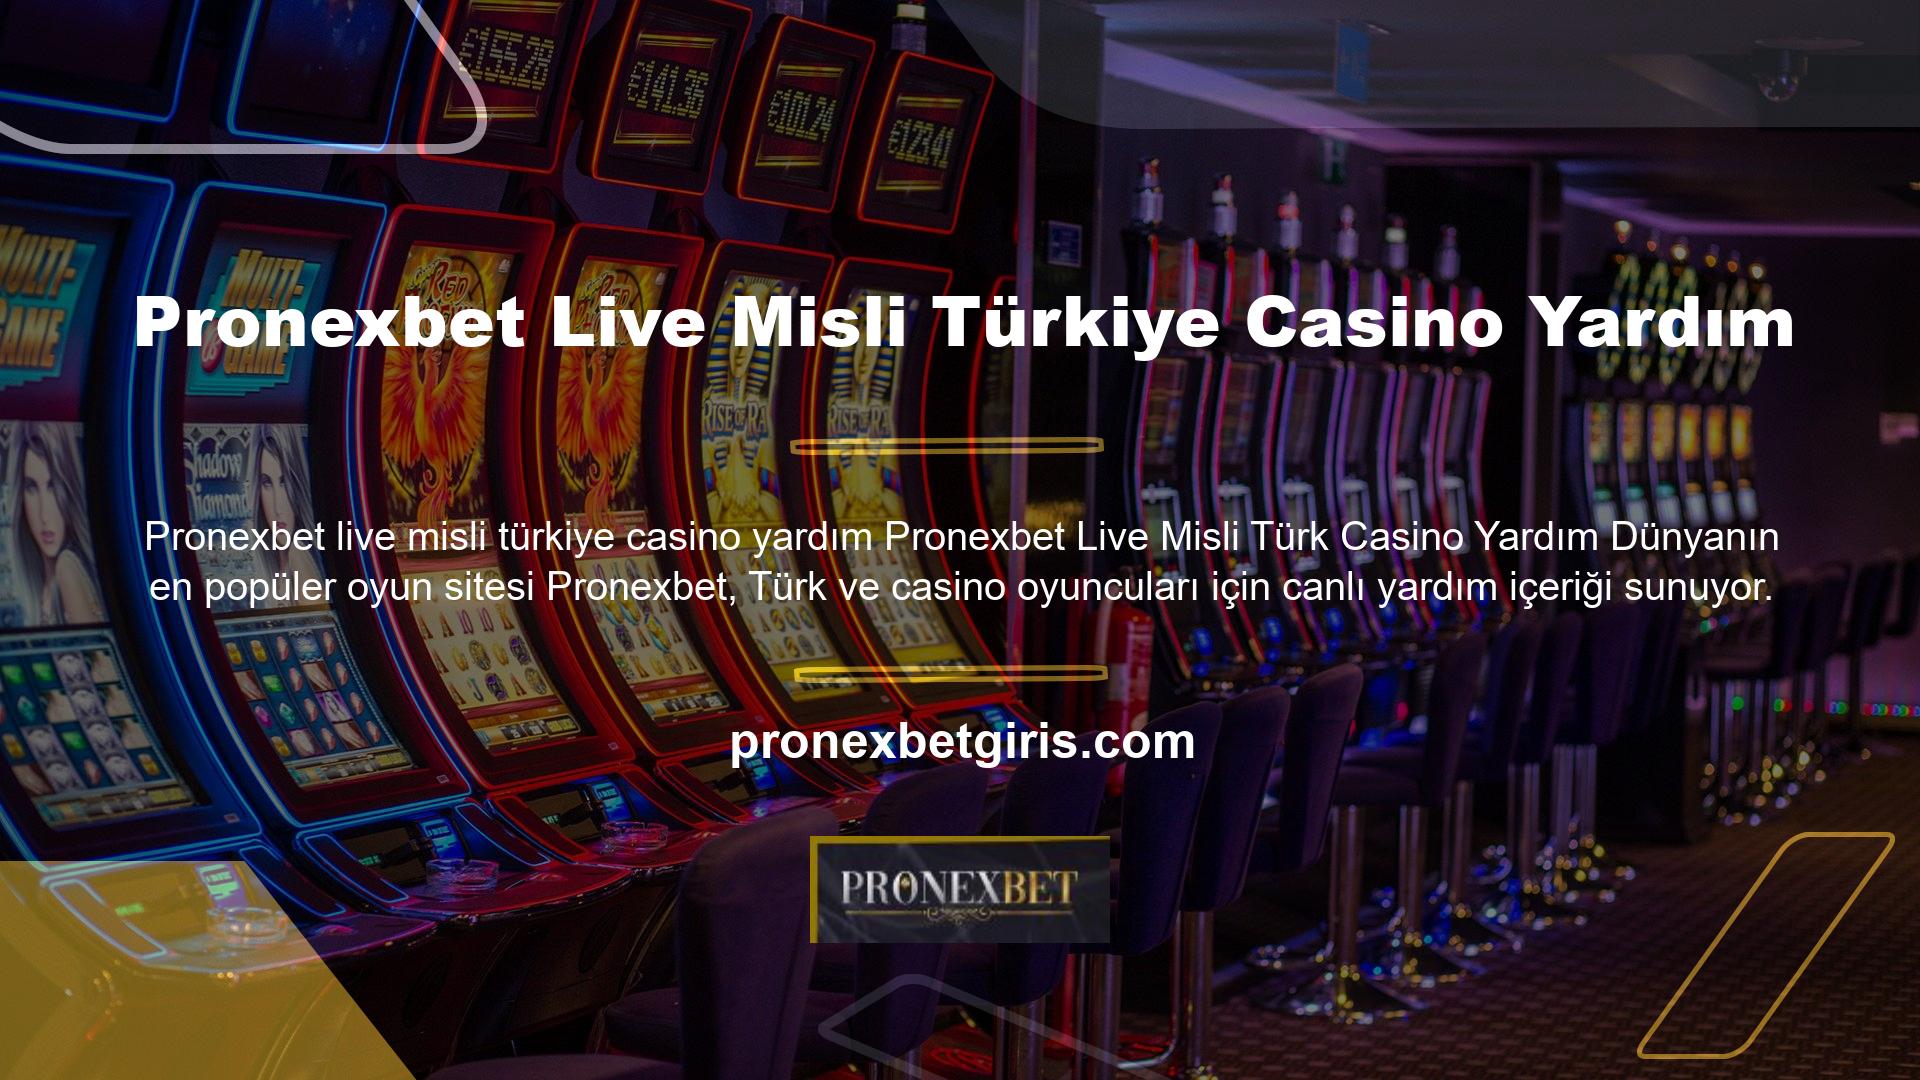 Pronexbet casino oyunları için Türkçe yardım arıyorsanız, tüm Pronexbet giriş sorularına Türkçe cevap alabilirsiniz